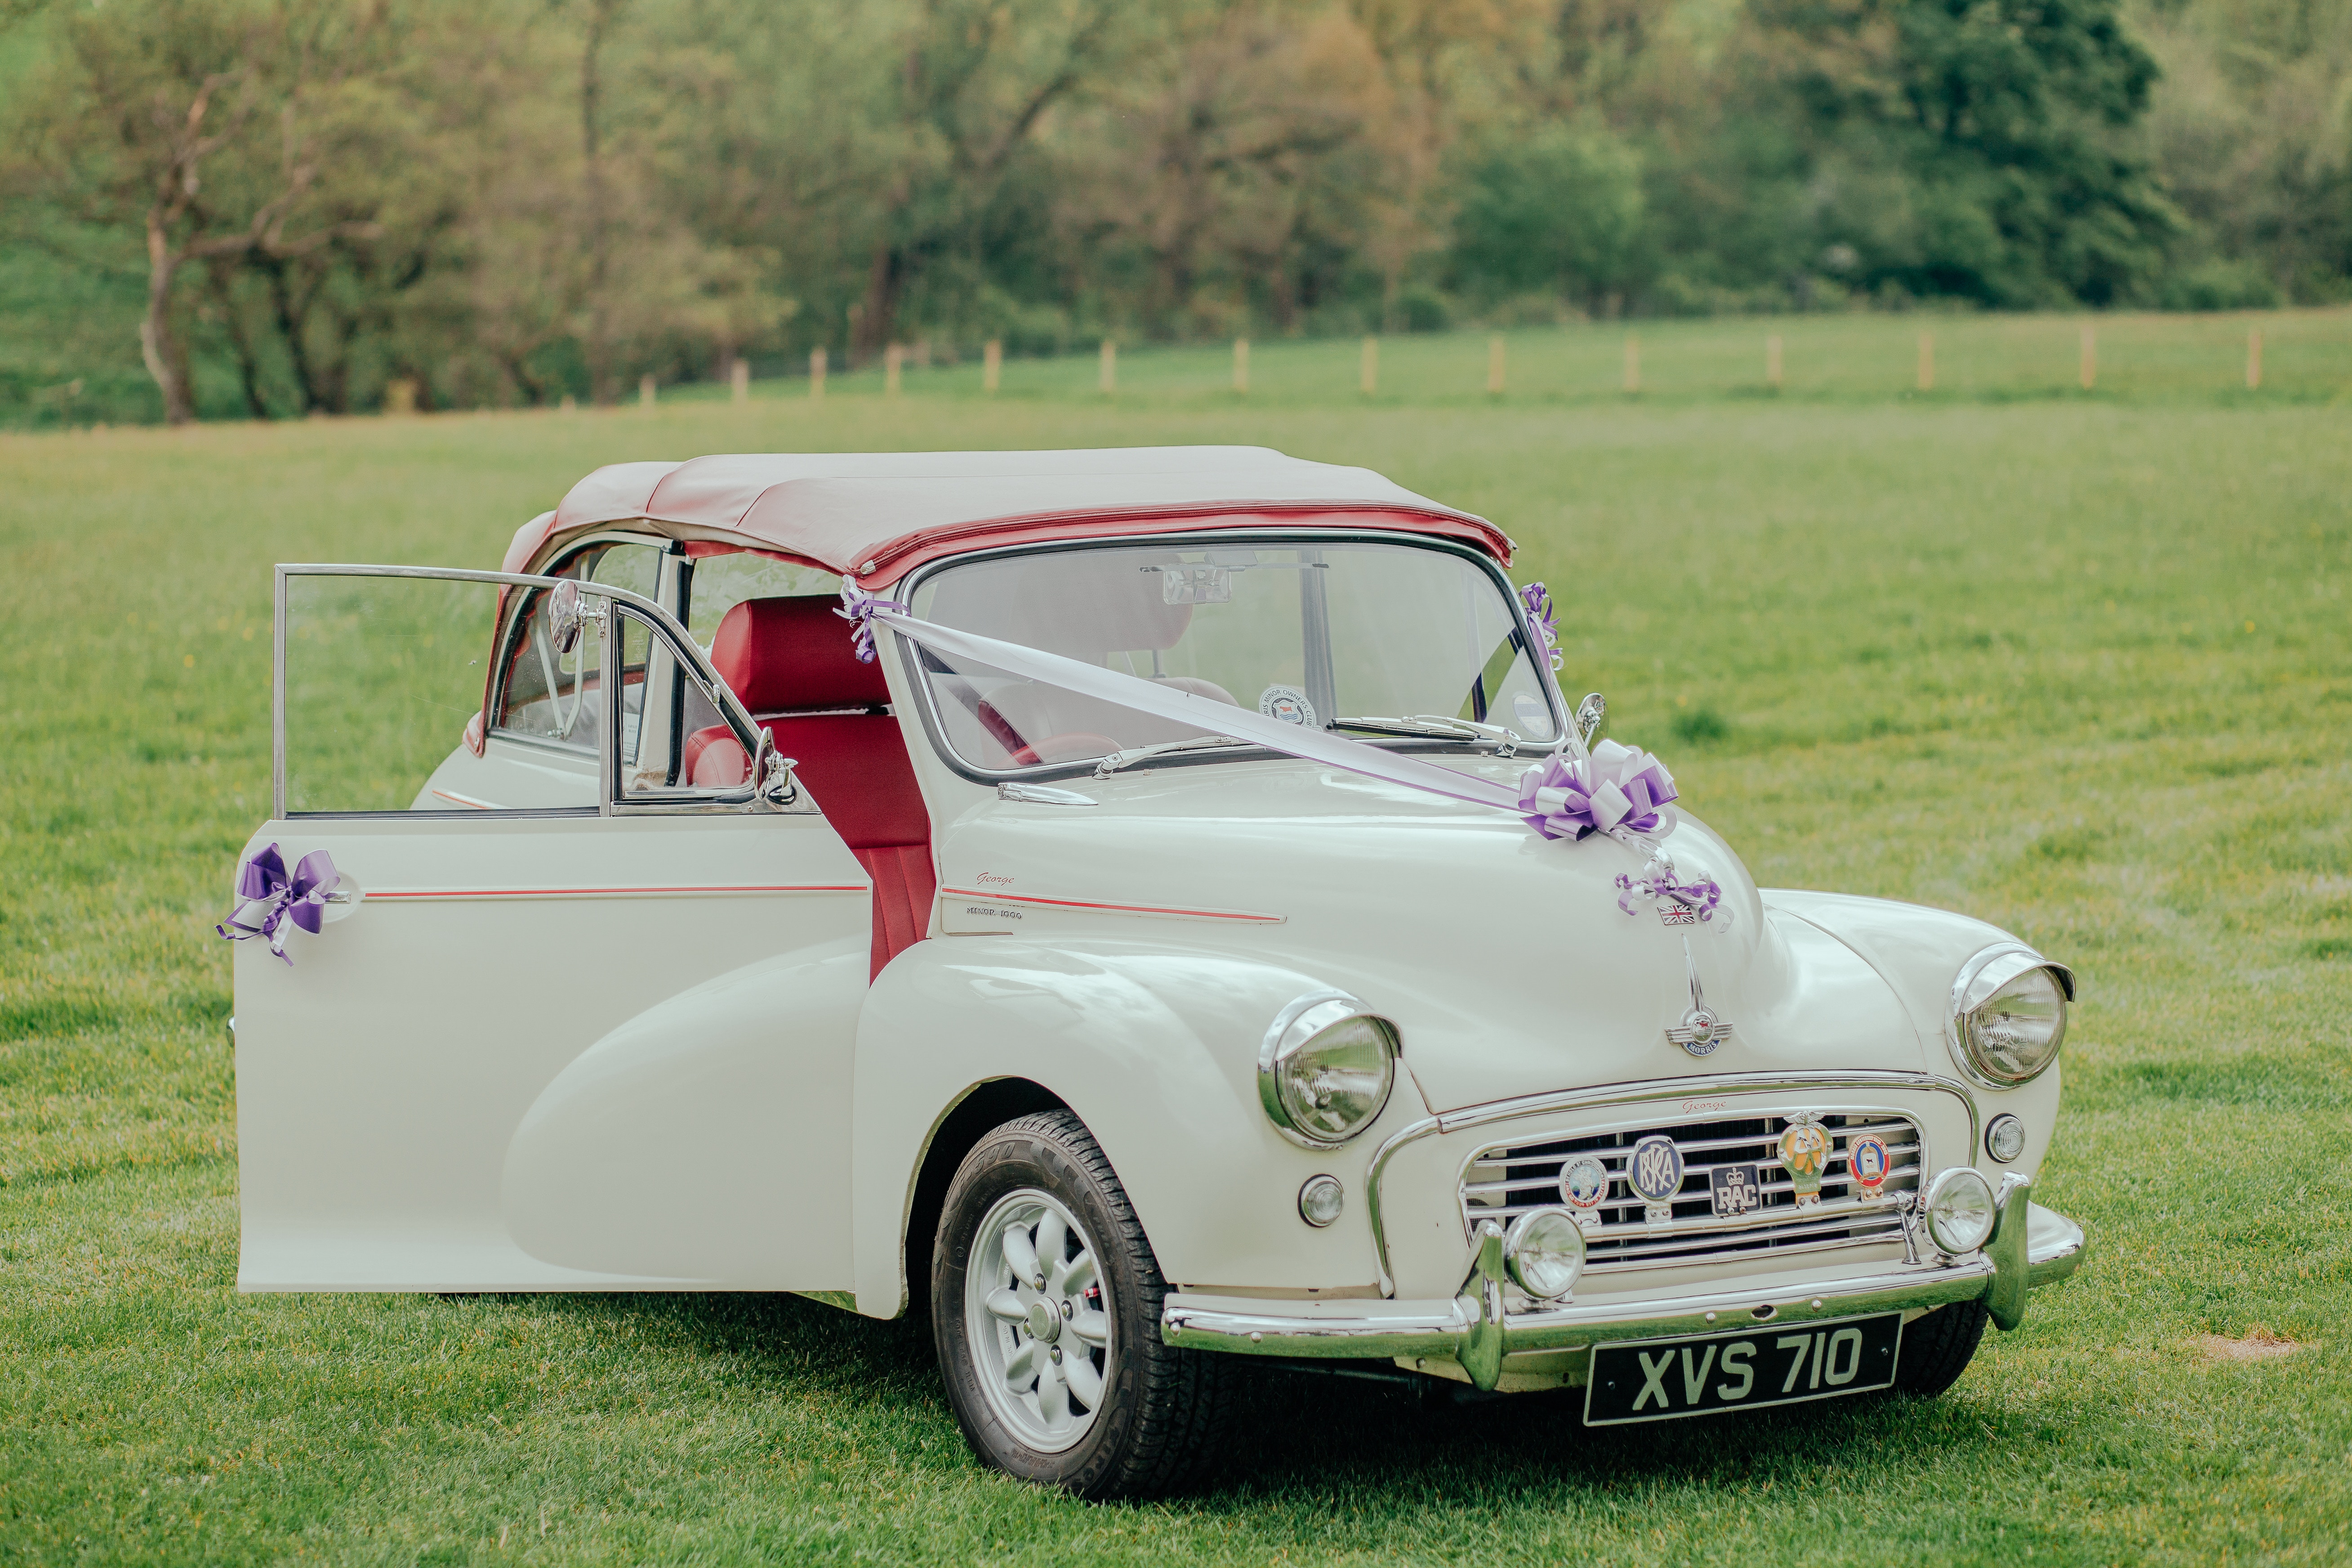 Vintage wedding car